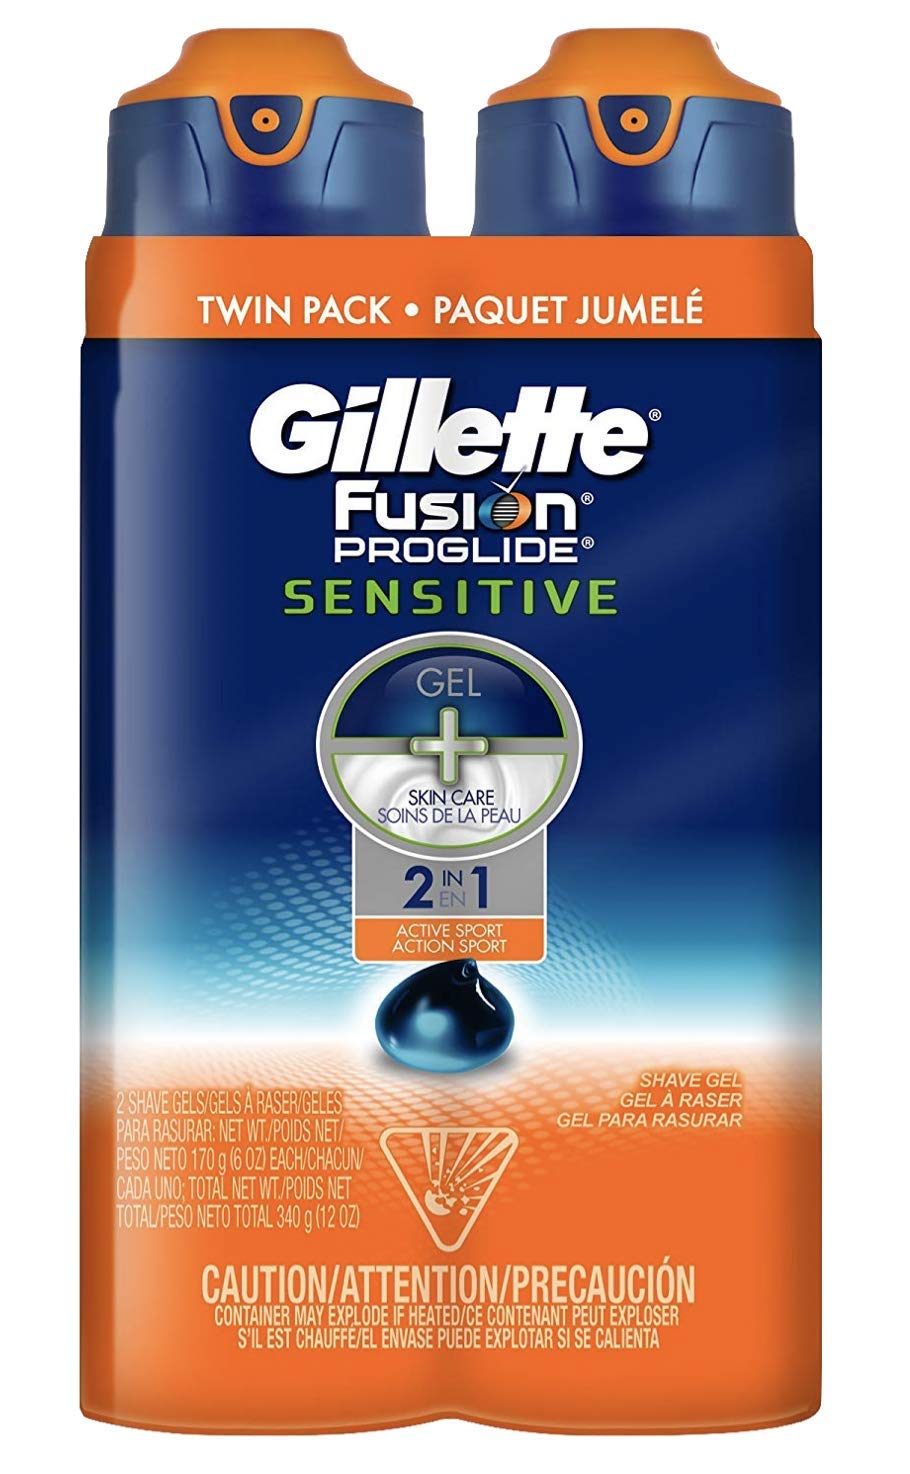 Gillette Fusion ProGlide Sensitive 2 in 1 Shave Gel, Active Sport, Pack of 2, 12 oz each